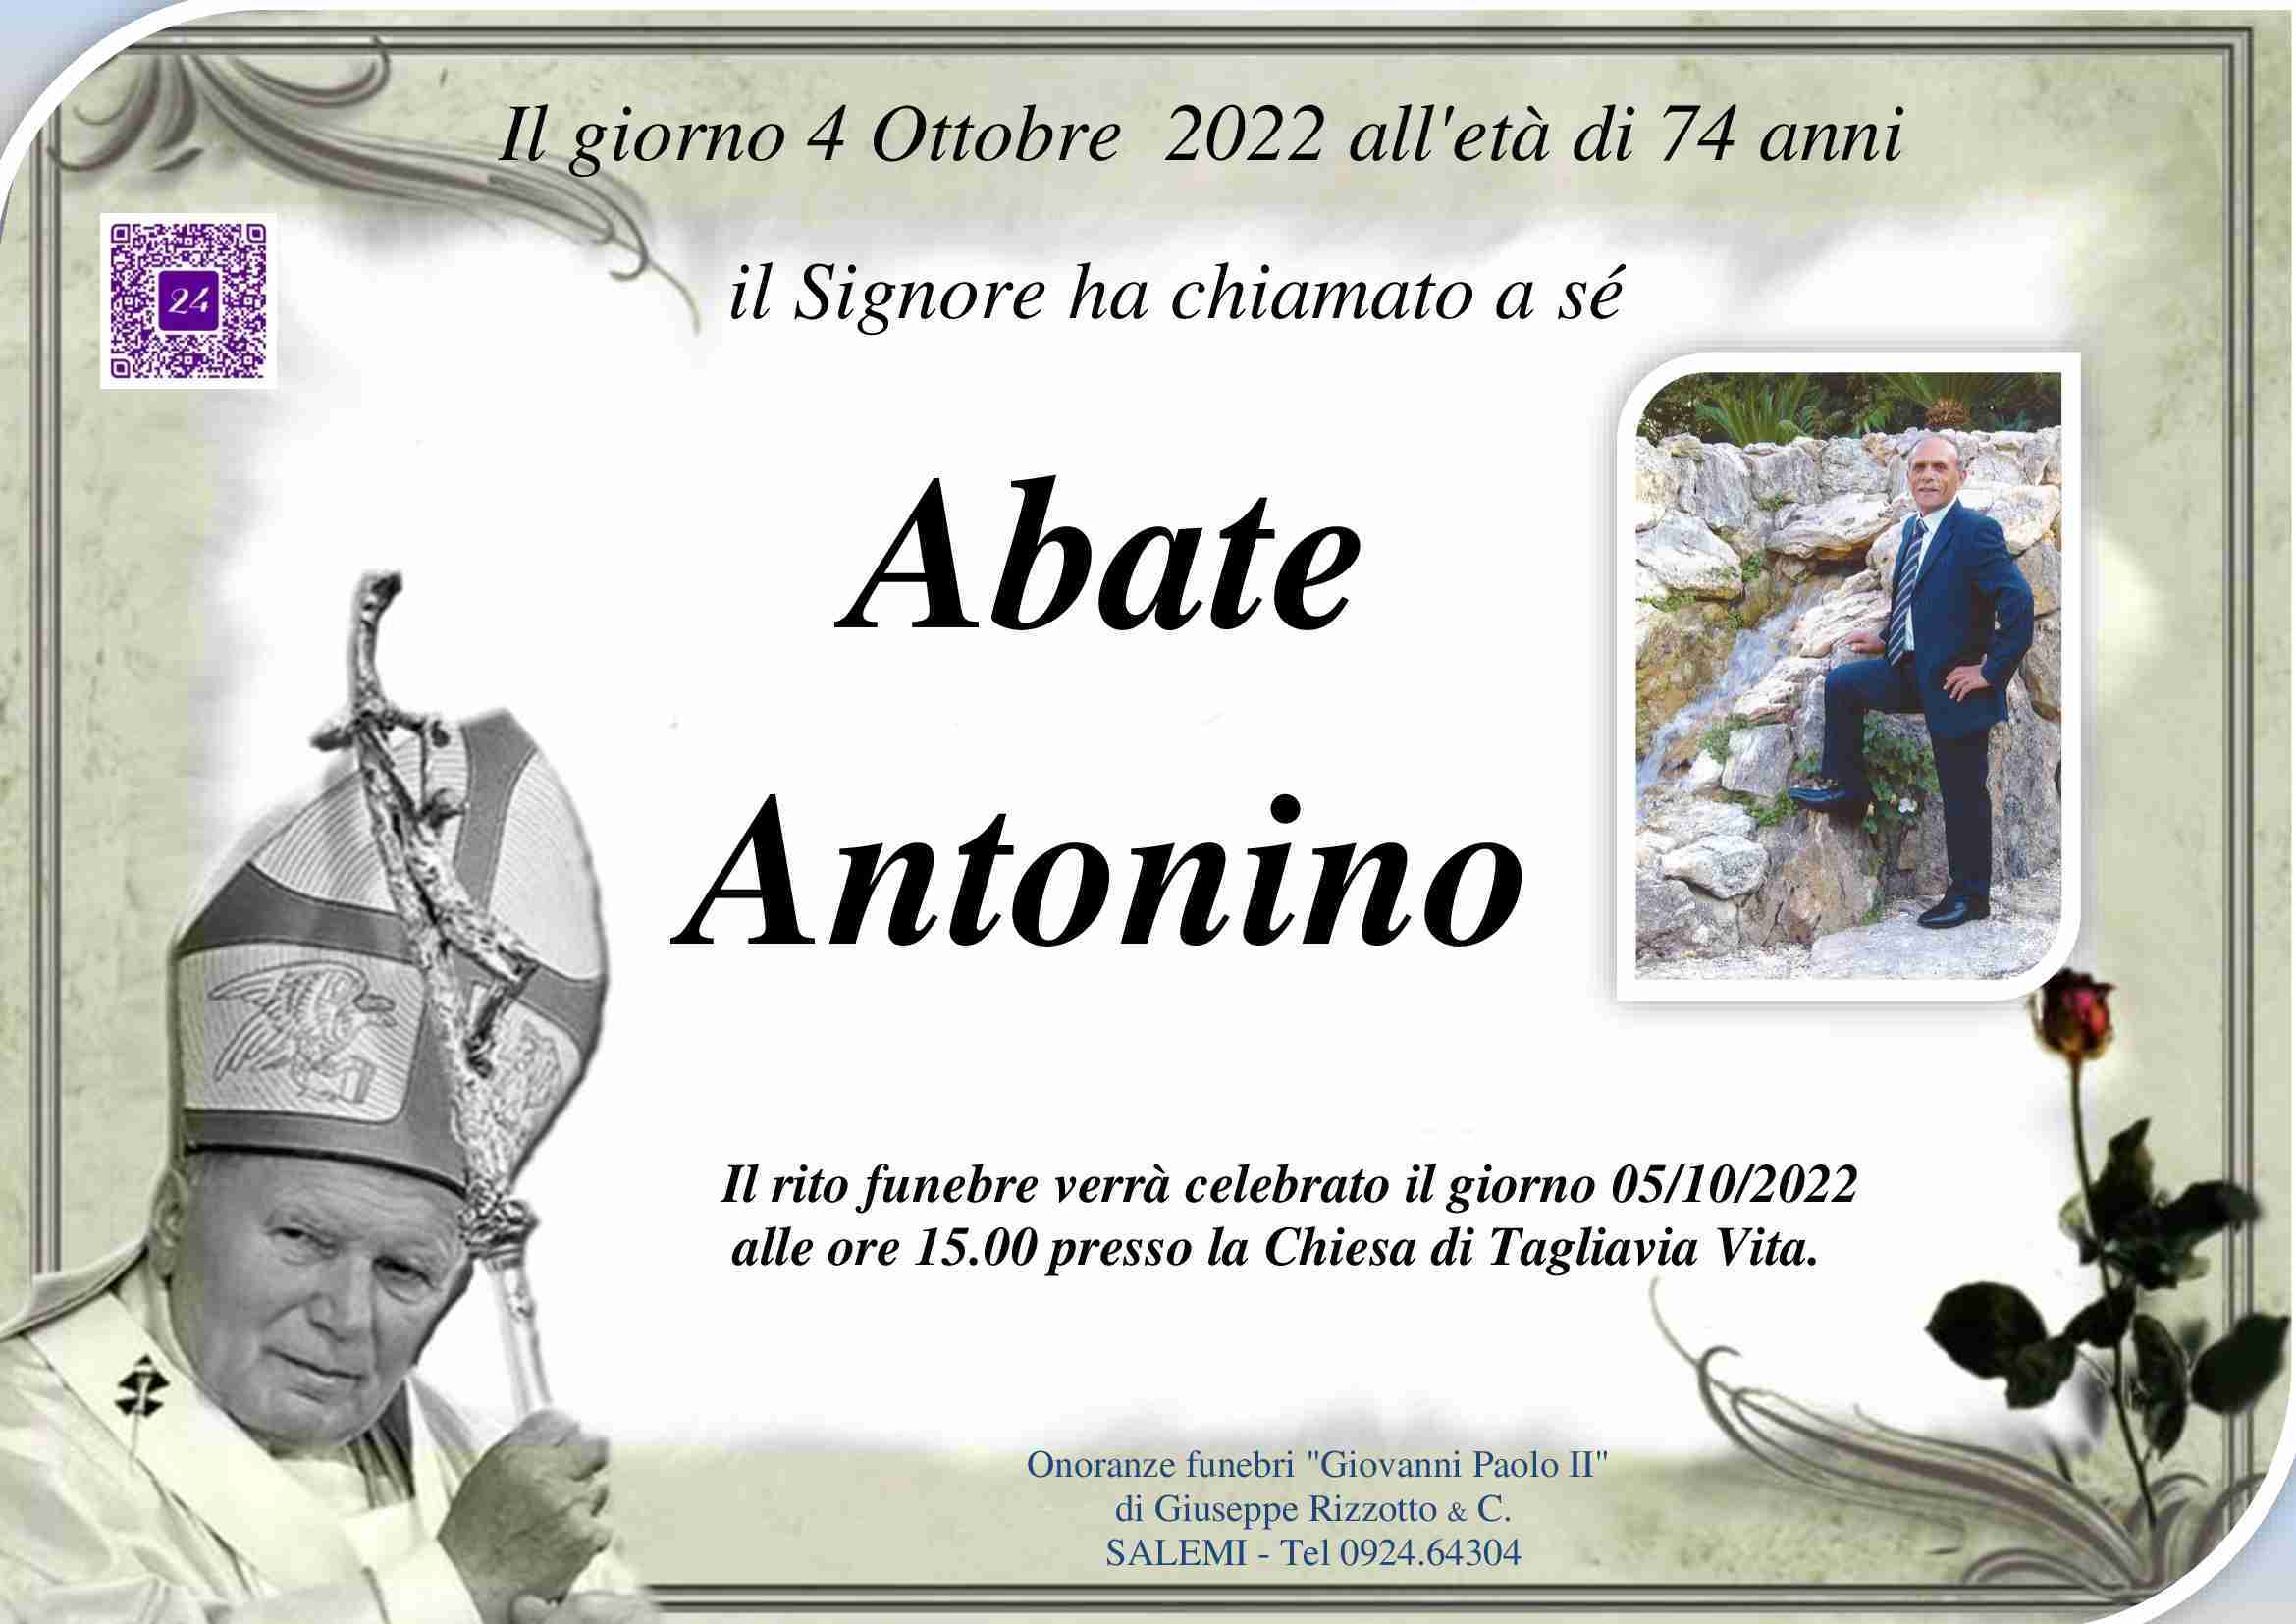 Antonino Abate